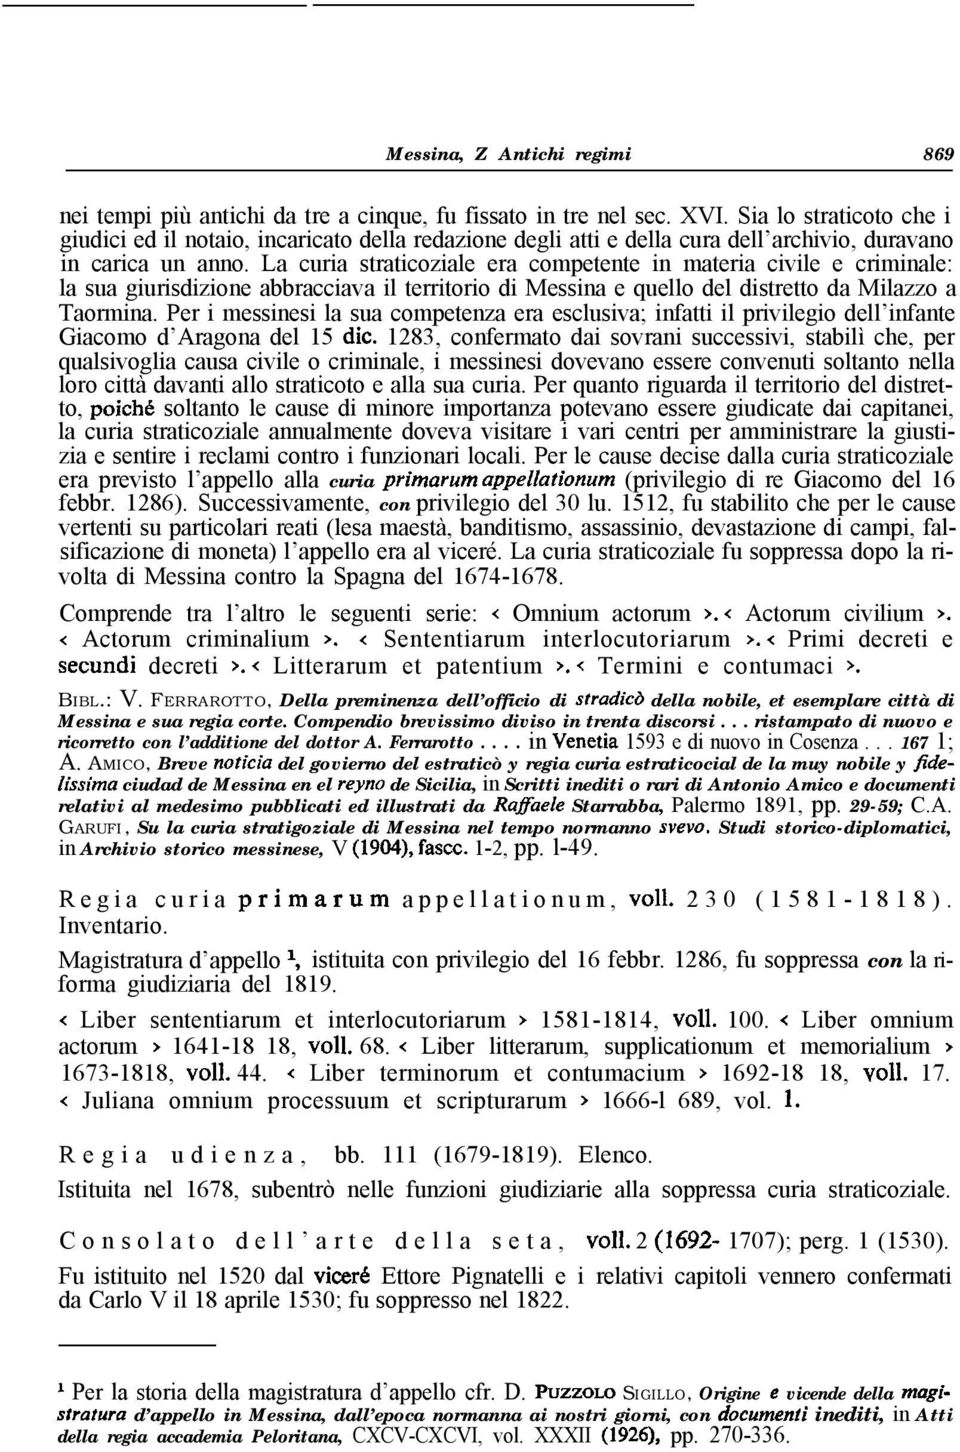 La curia straticoziale era competente in materia civile e criminale: la sua giurisdizione abbracciava il territorio di Messina e quello del distretto da Milazzo a Taormina.